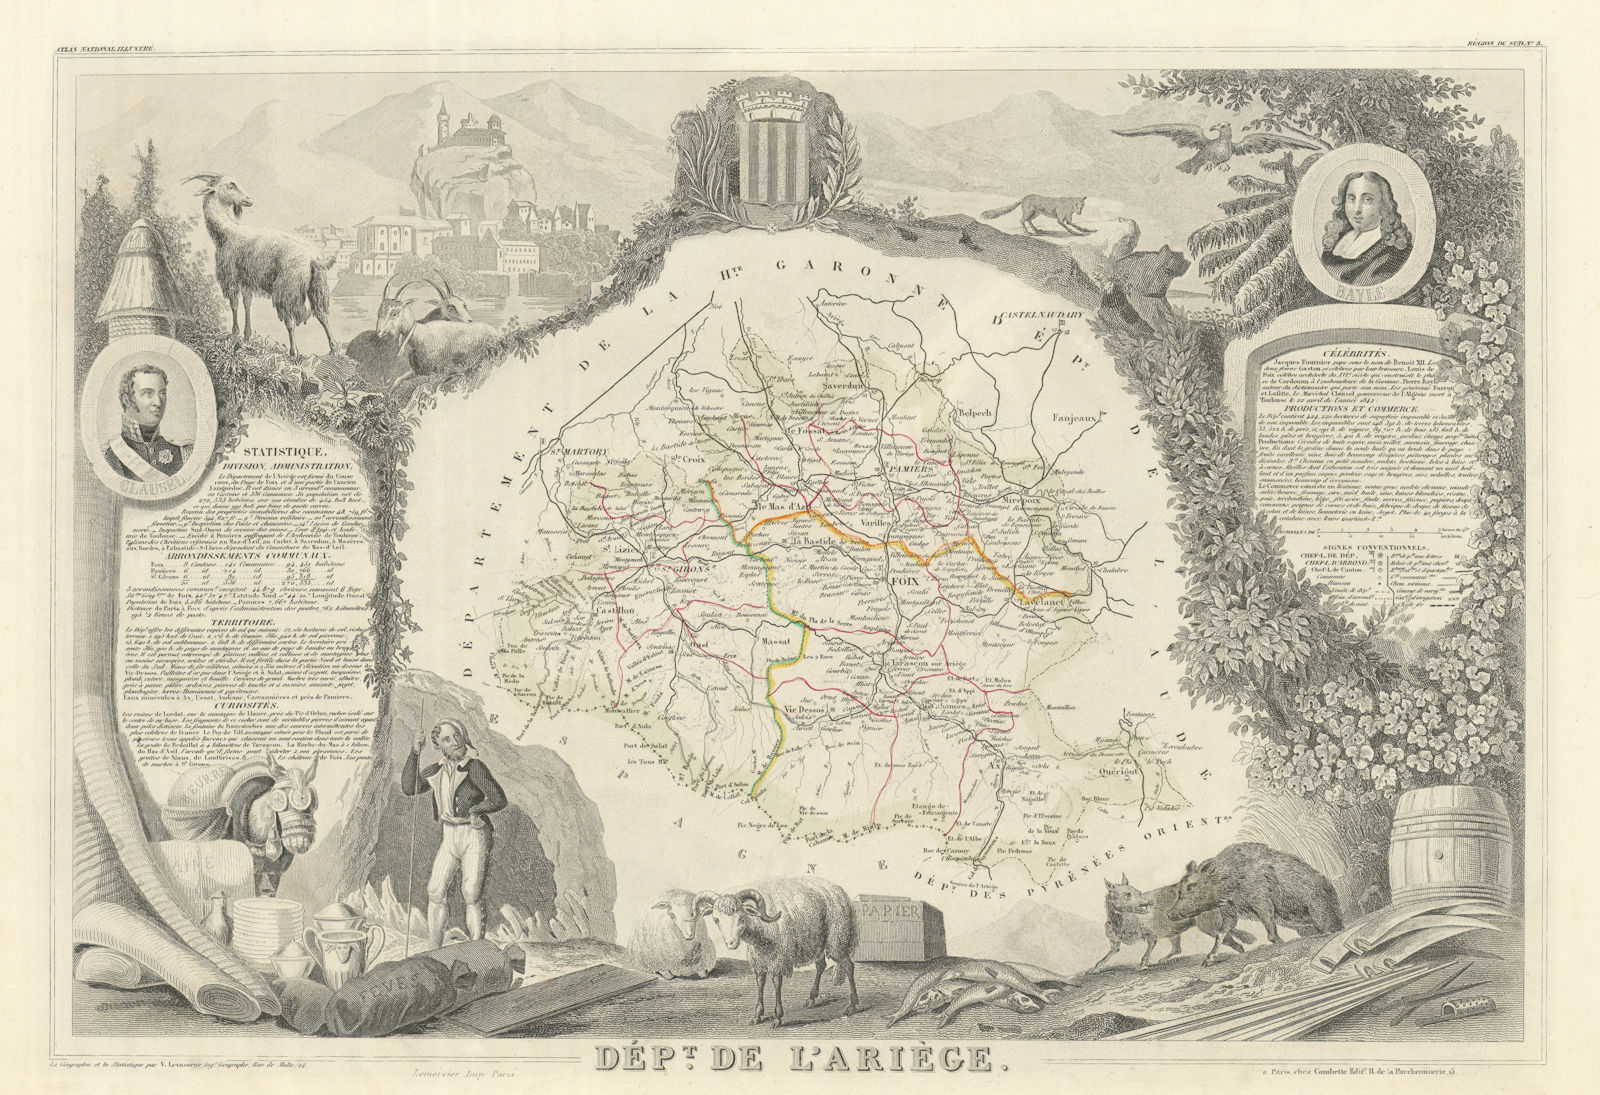 Département de l'ARIÈGE. Decorative antique map/carte by Victor LEVASSEUR 1856